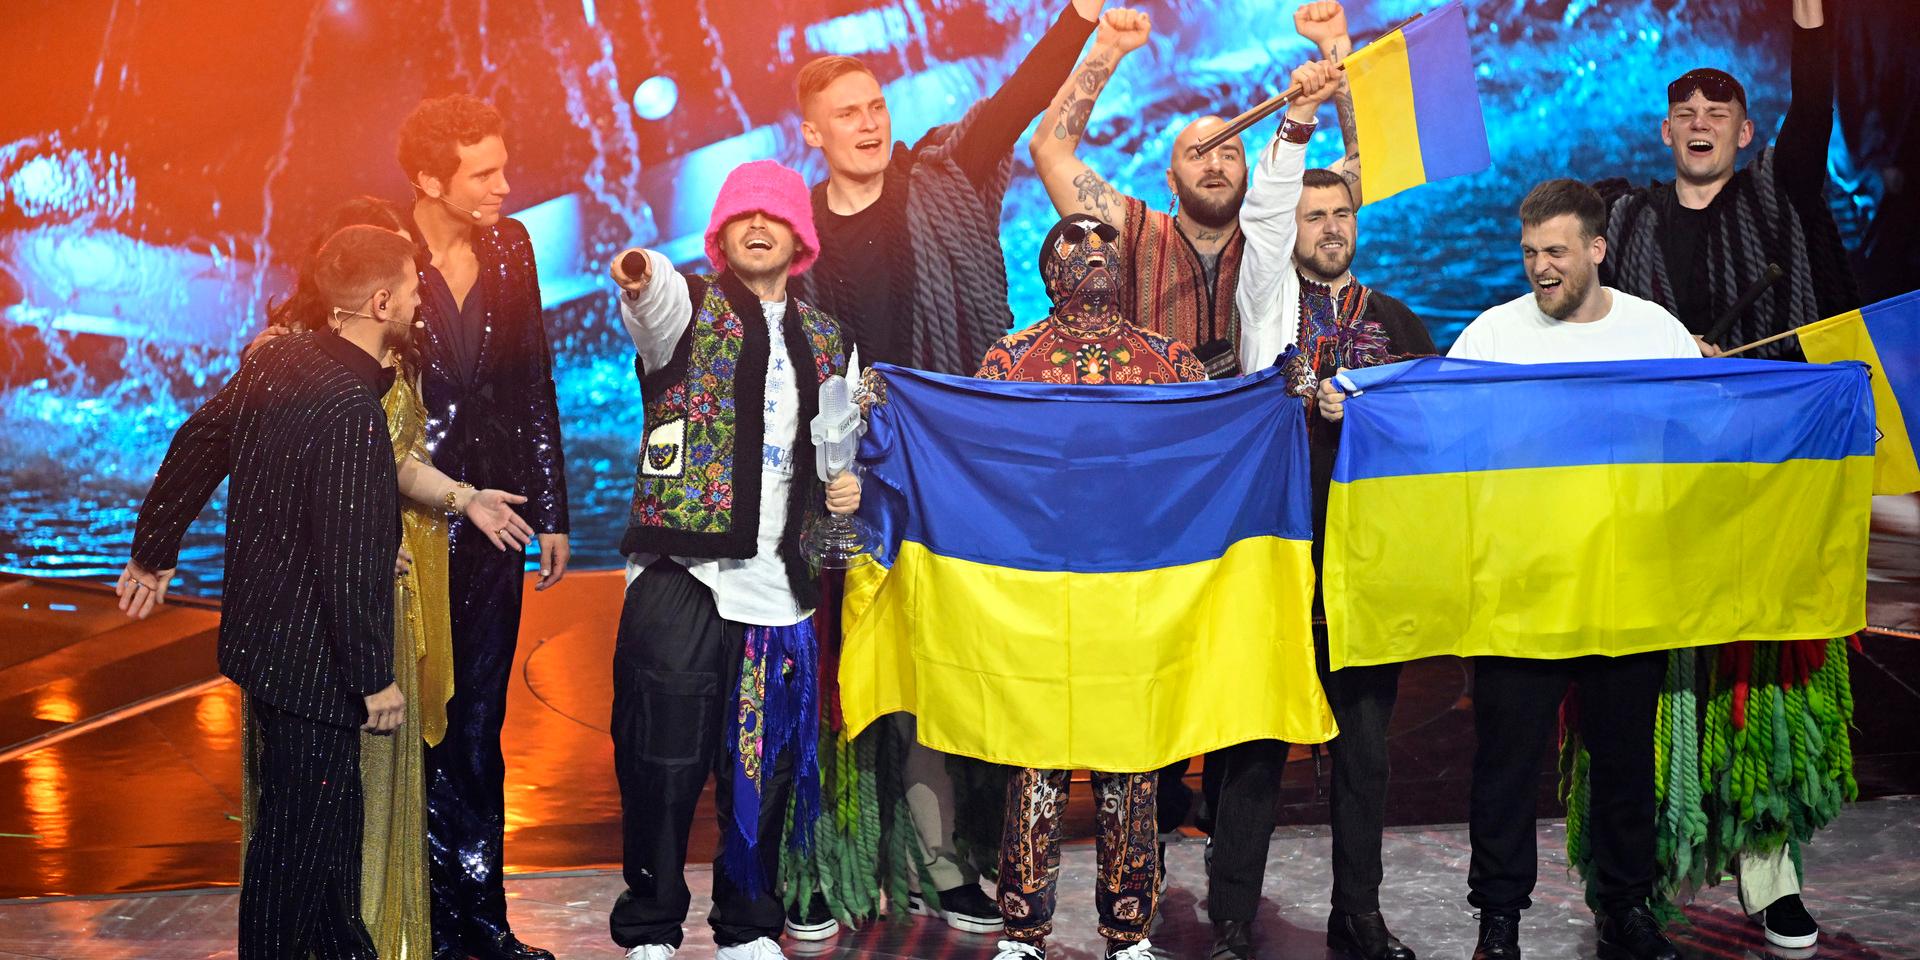 Ukrainas Kalush Orchestra hoppas att vinsten kan höja moralen hos ukrainarna.